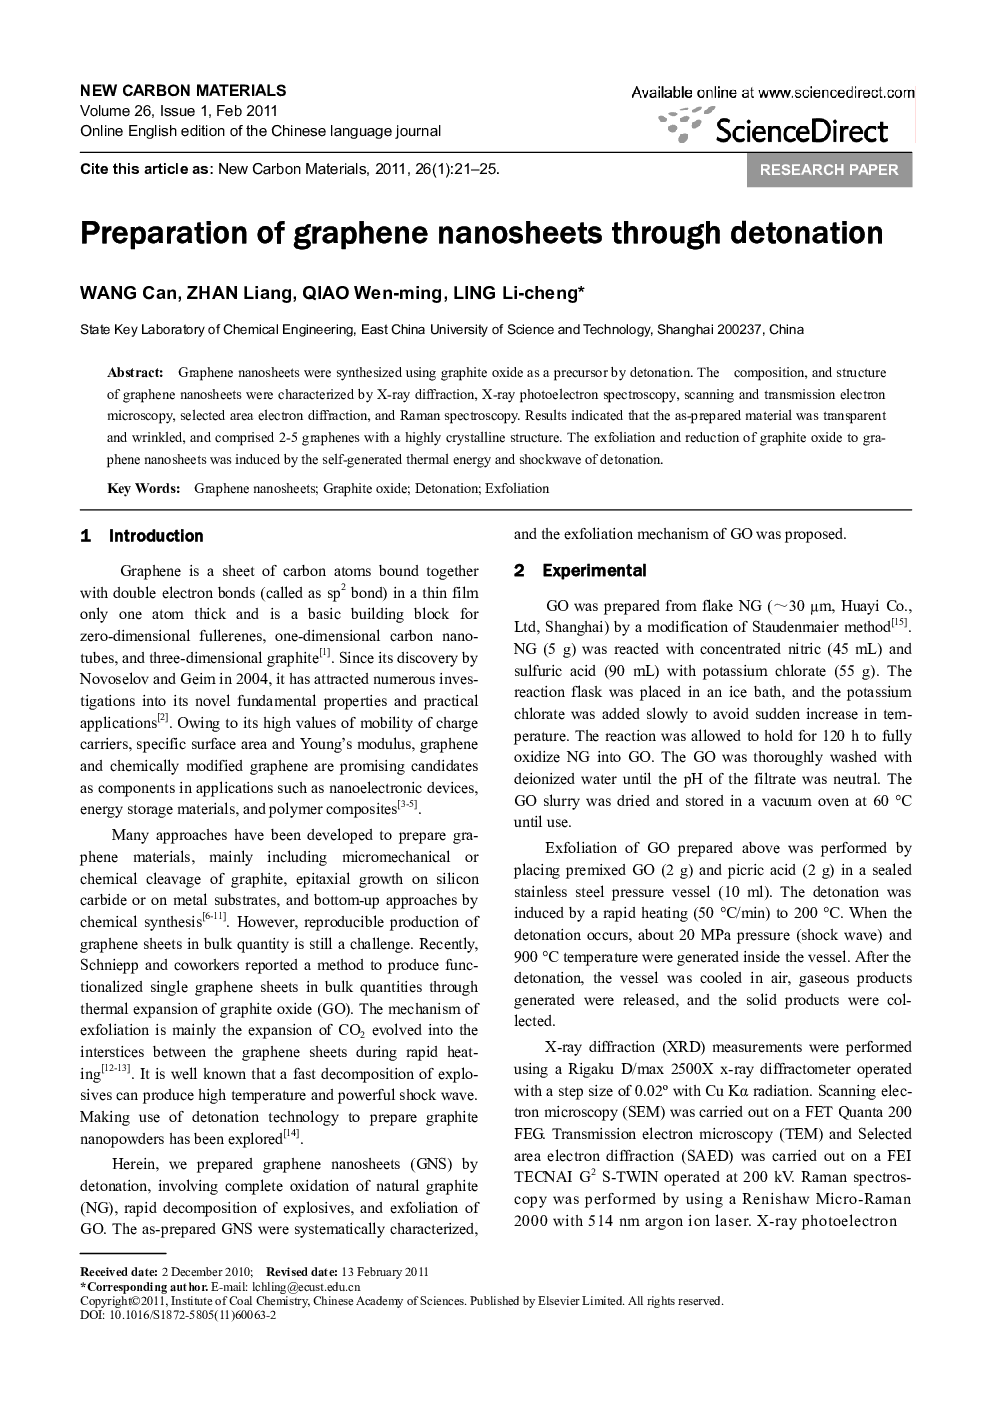 Preparation of graphene nanosheets through detonation